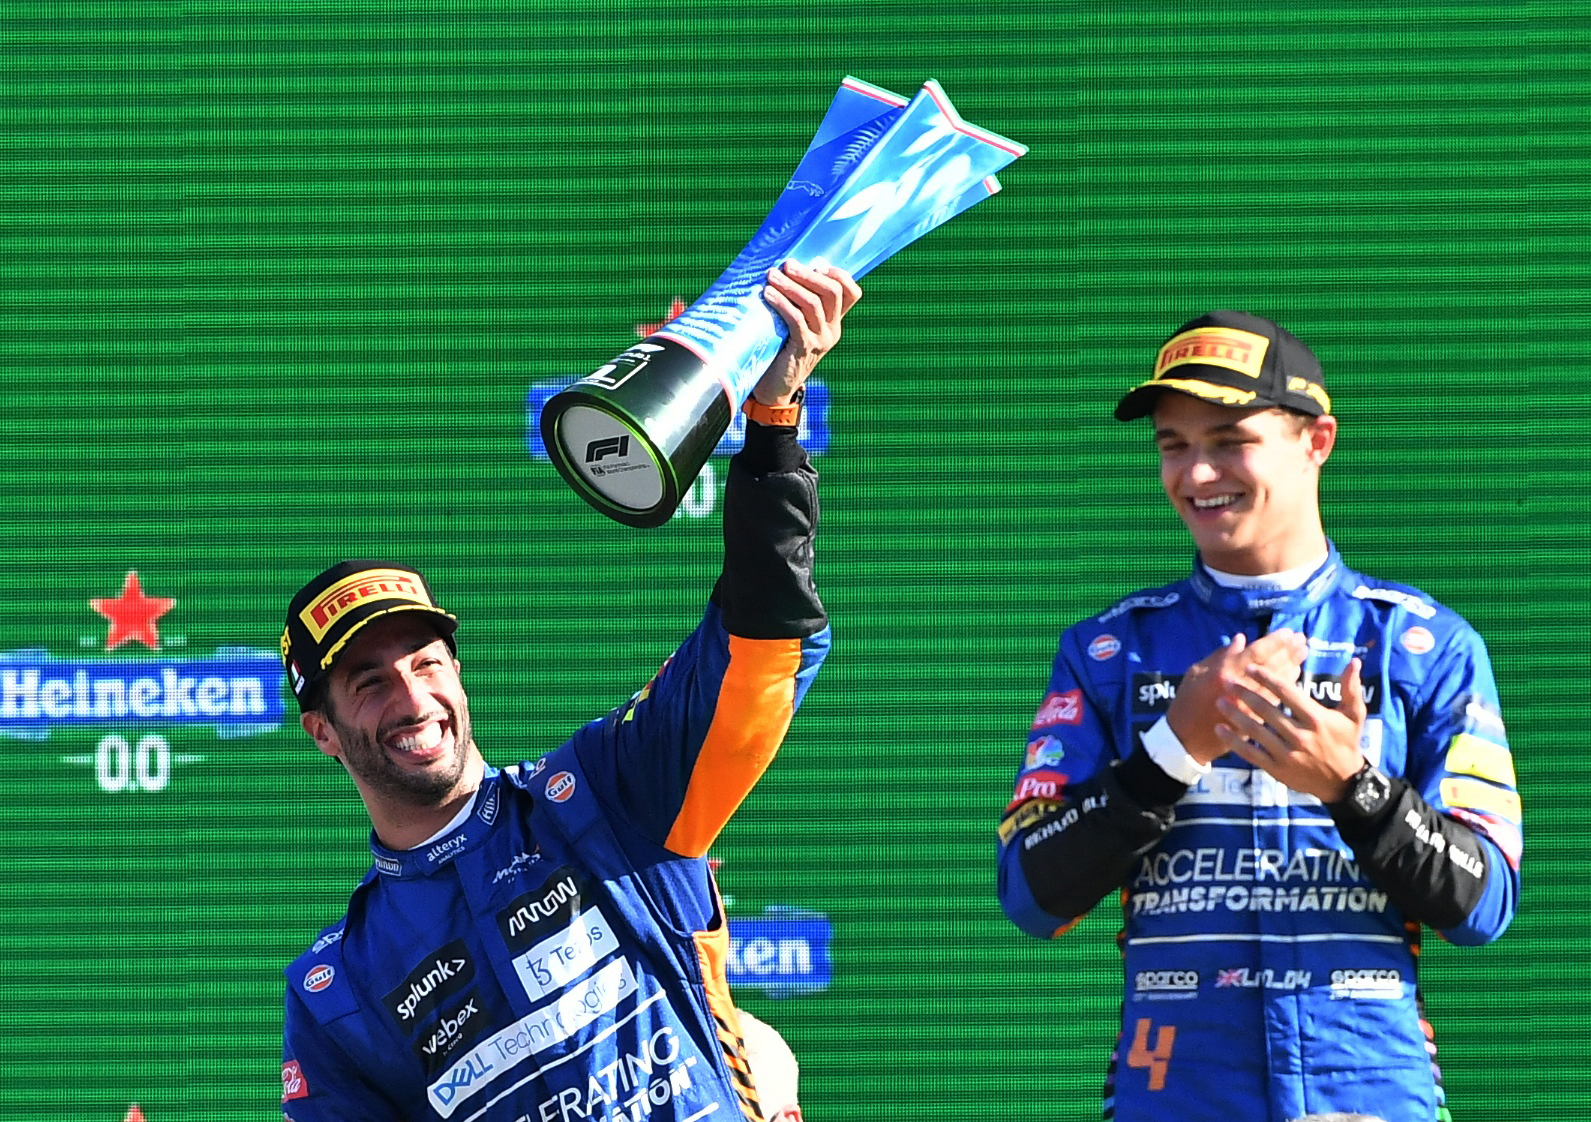 Los pilotos de McLaren festejan en el podio: Daniel Ricciardo, el ganador, con su trofeo, y Lando Norris, que fue segundo (REUTERS/Jennifer Lorenzini)